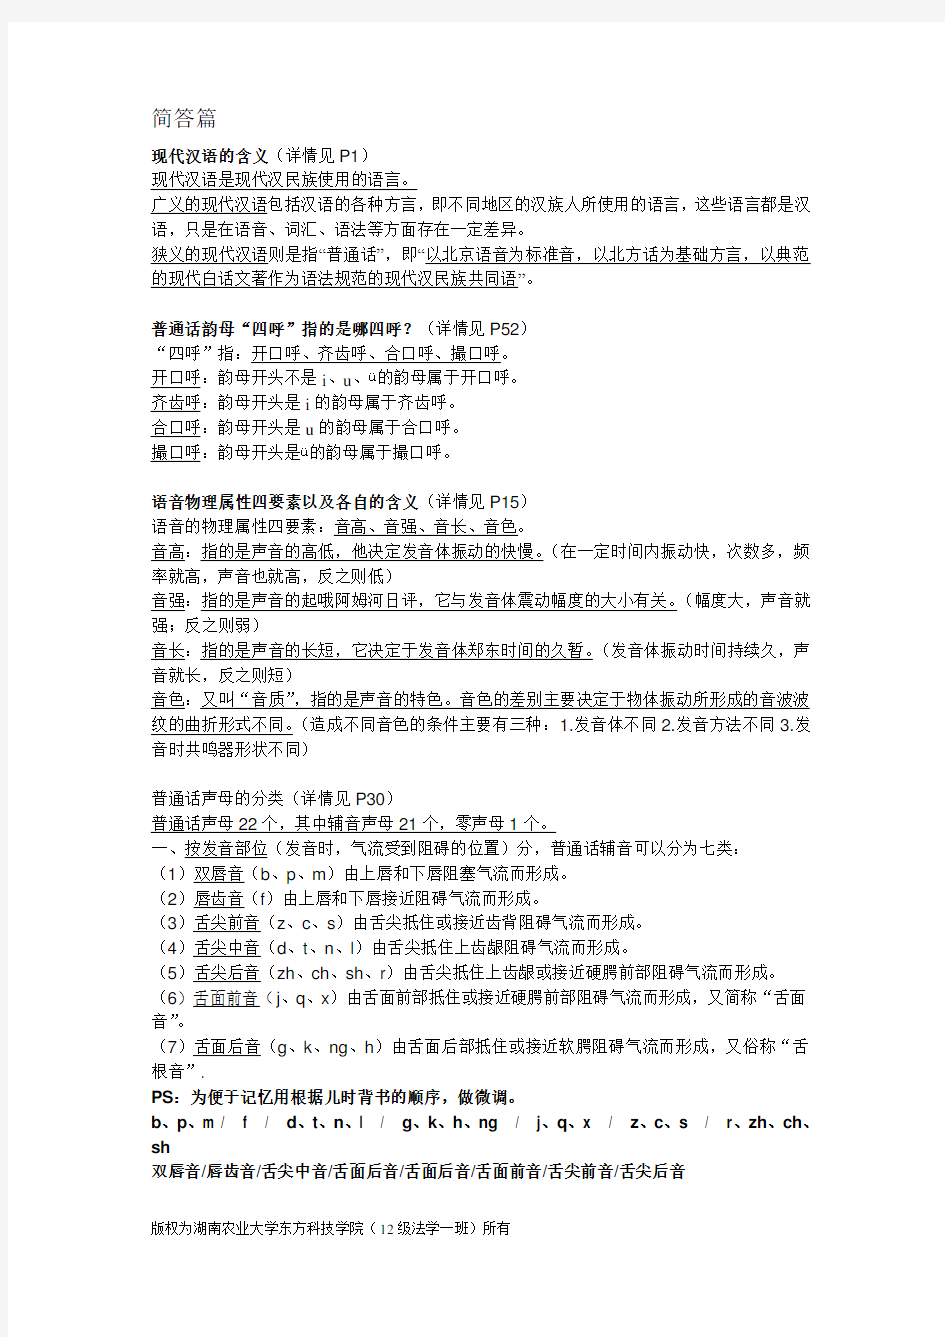 现代汉语(增订五版)考试重点解析